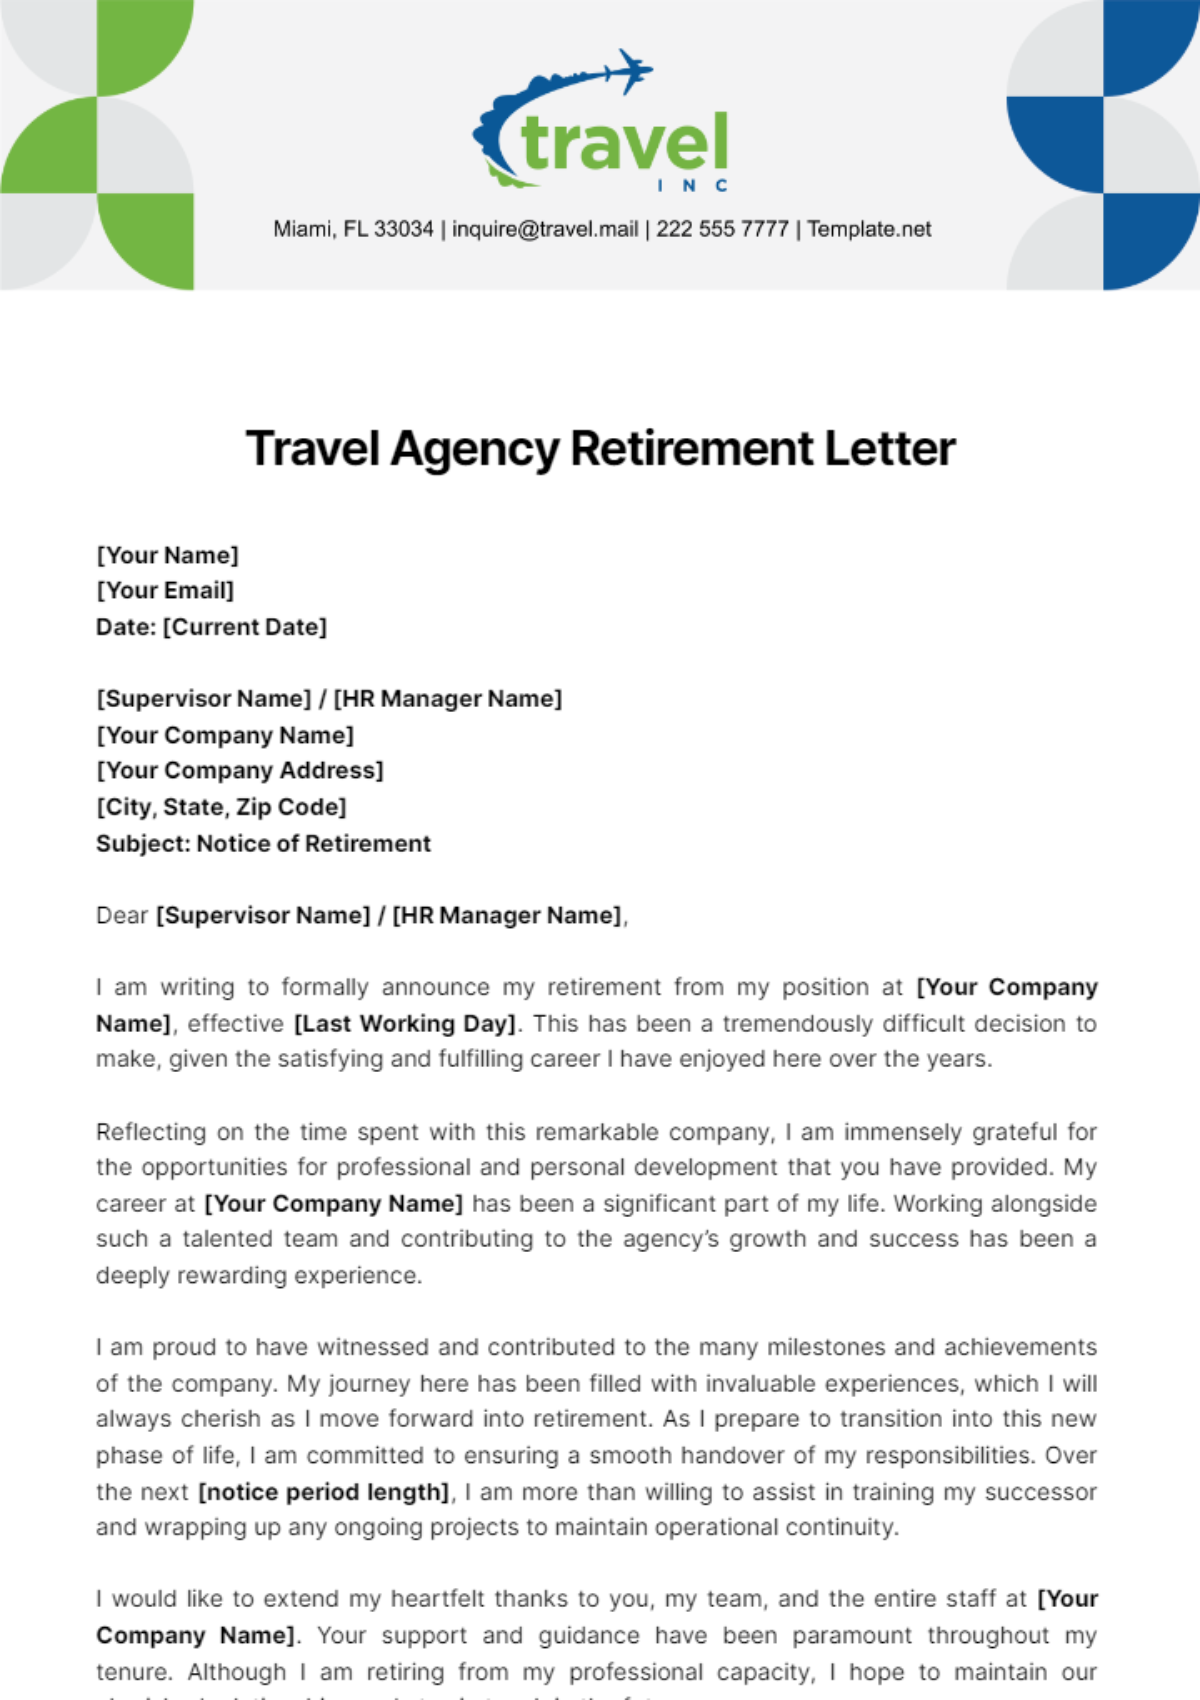 Travel Agency Retirement Letter Template